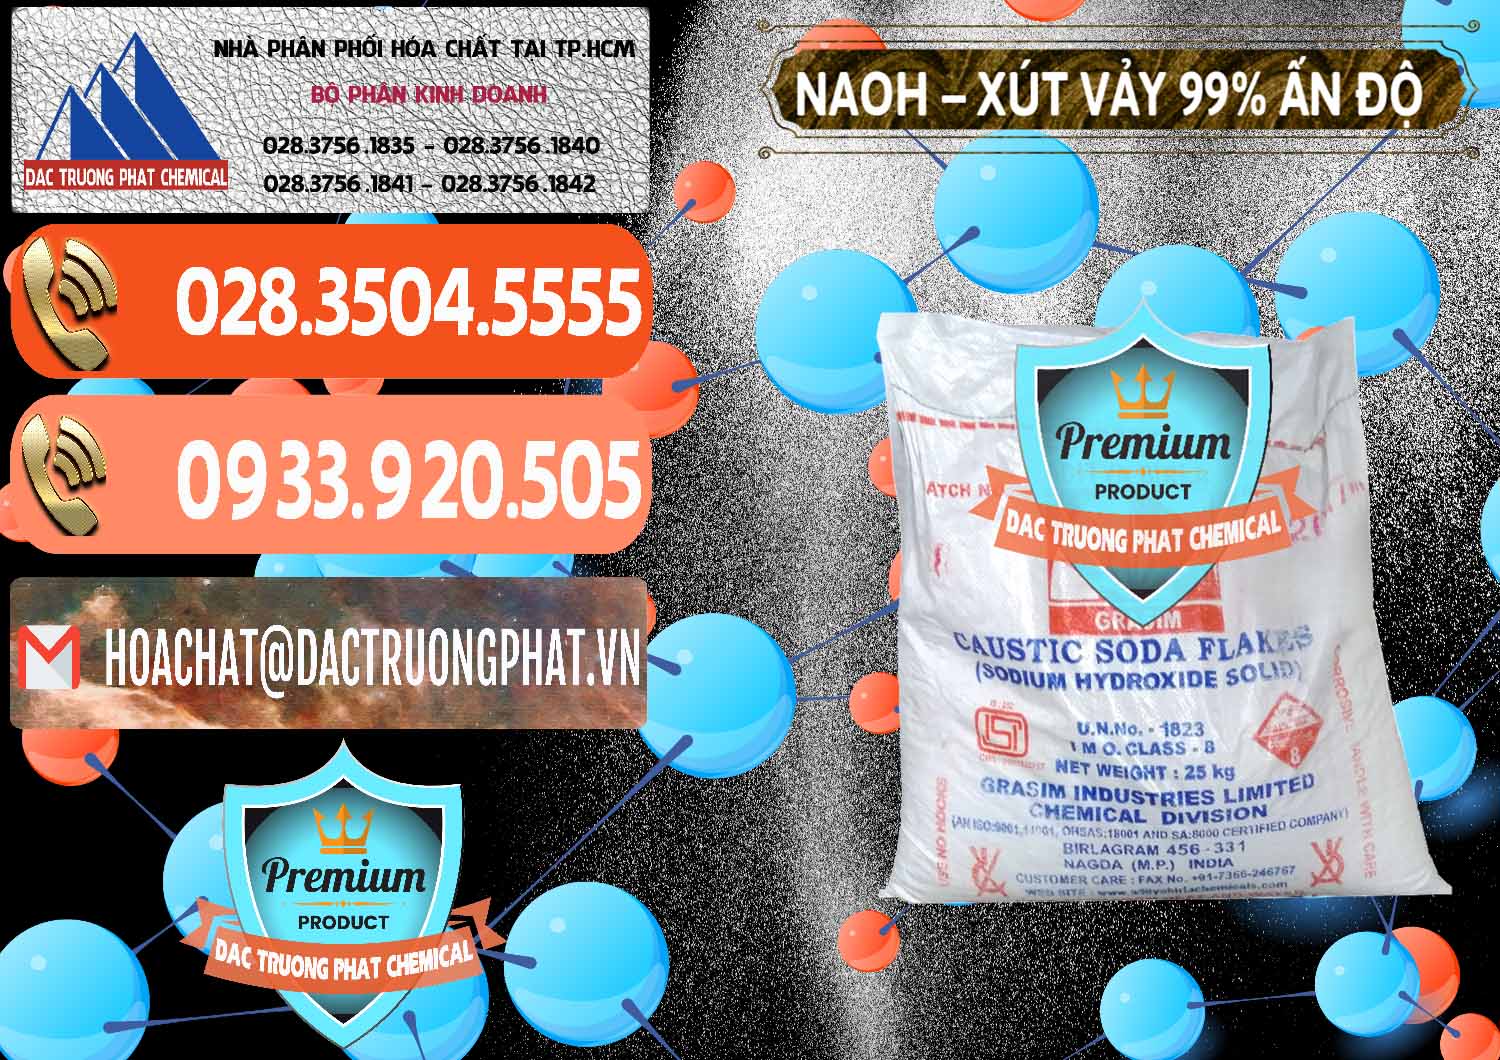 Công ty chuyên kinh doanh - bán Xút Vảy - NaOH Vảy 99% Aditya Birla Grasim Ấn Độ India - 0171 - Đơn vị phân phối và bán hóa chất tại TP.HCM - hoachatmientay.com